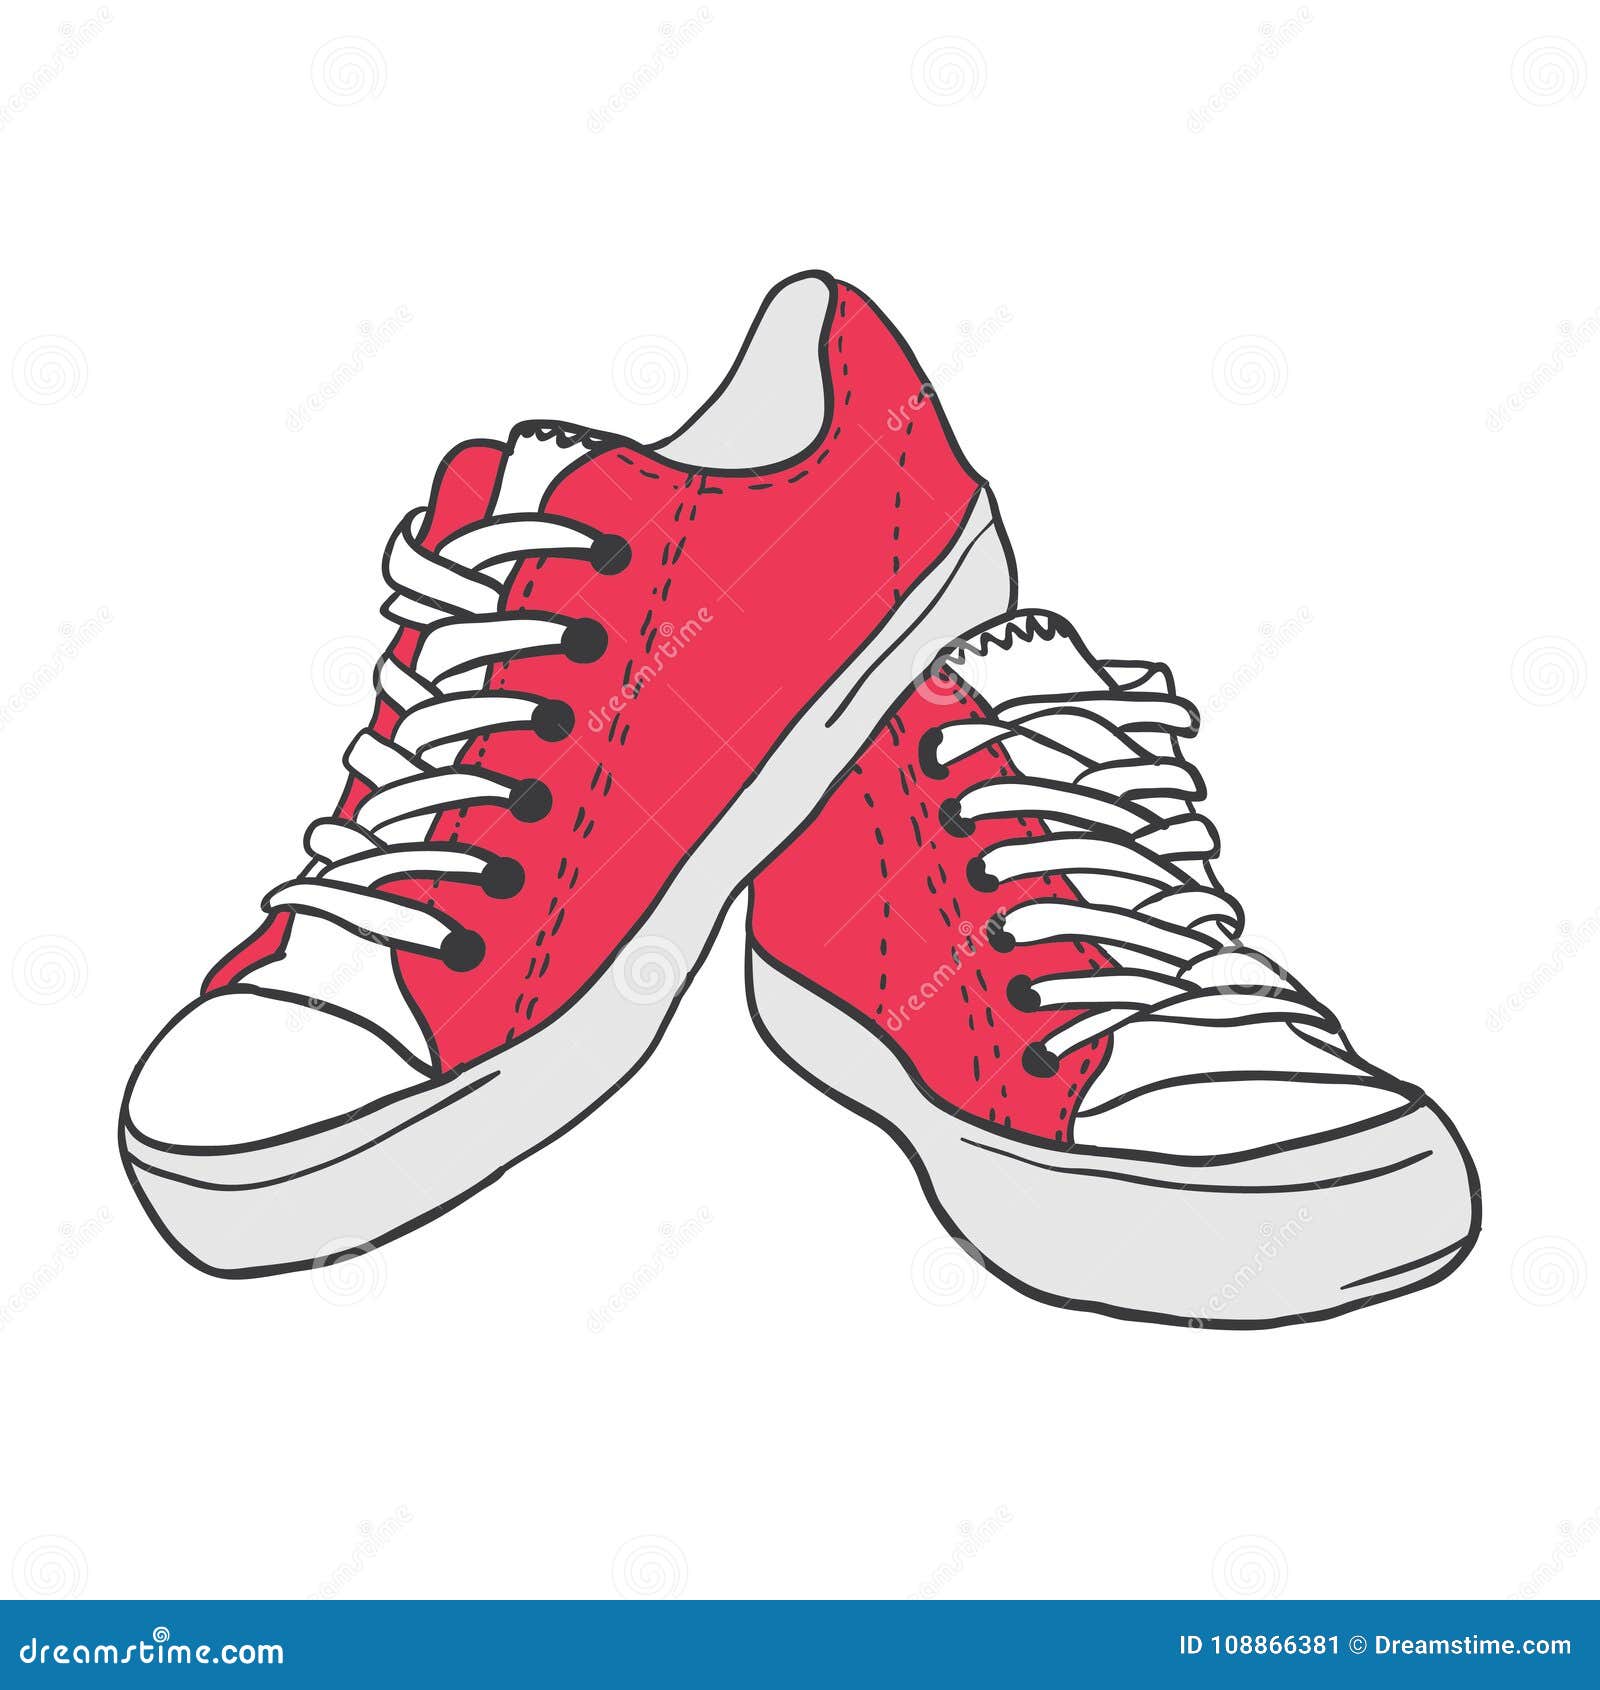 Illustrations stock vector. Illustration of symbol, sneaker - 108866381